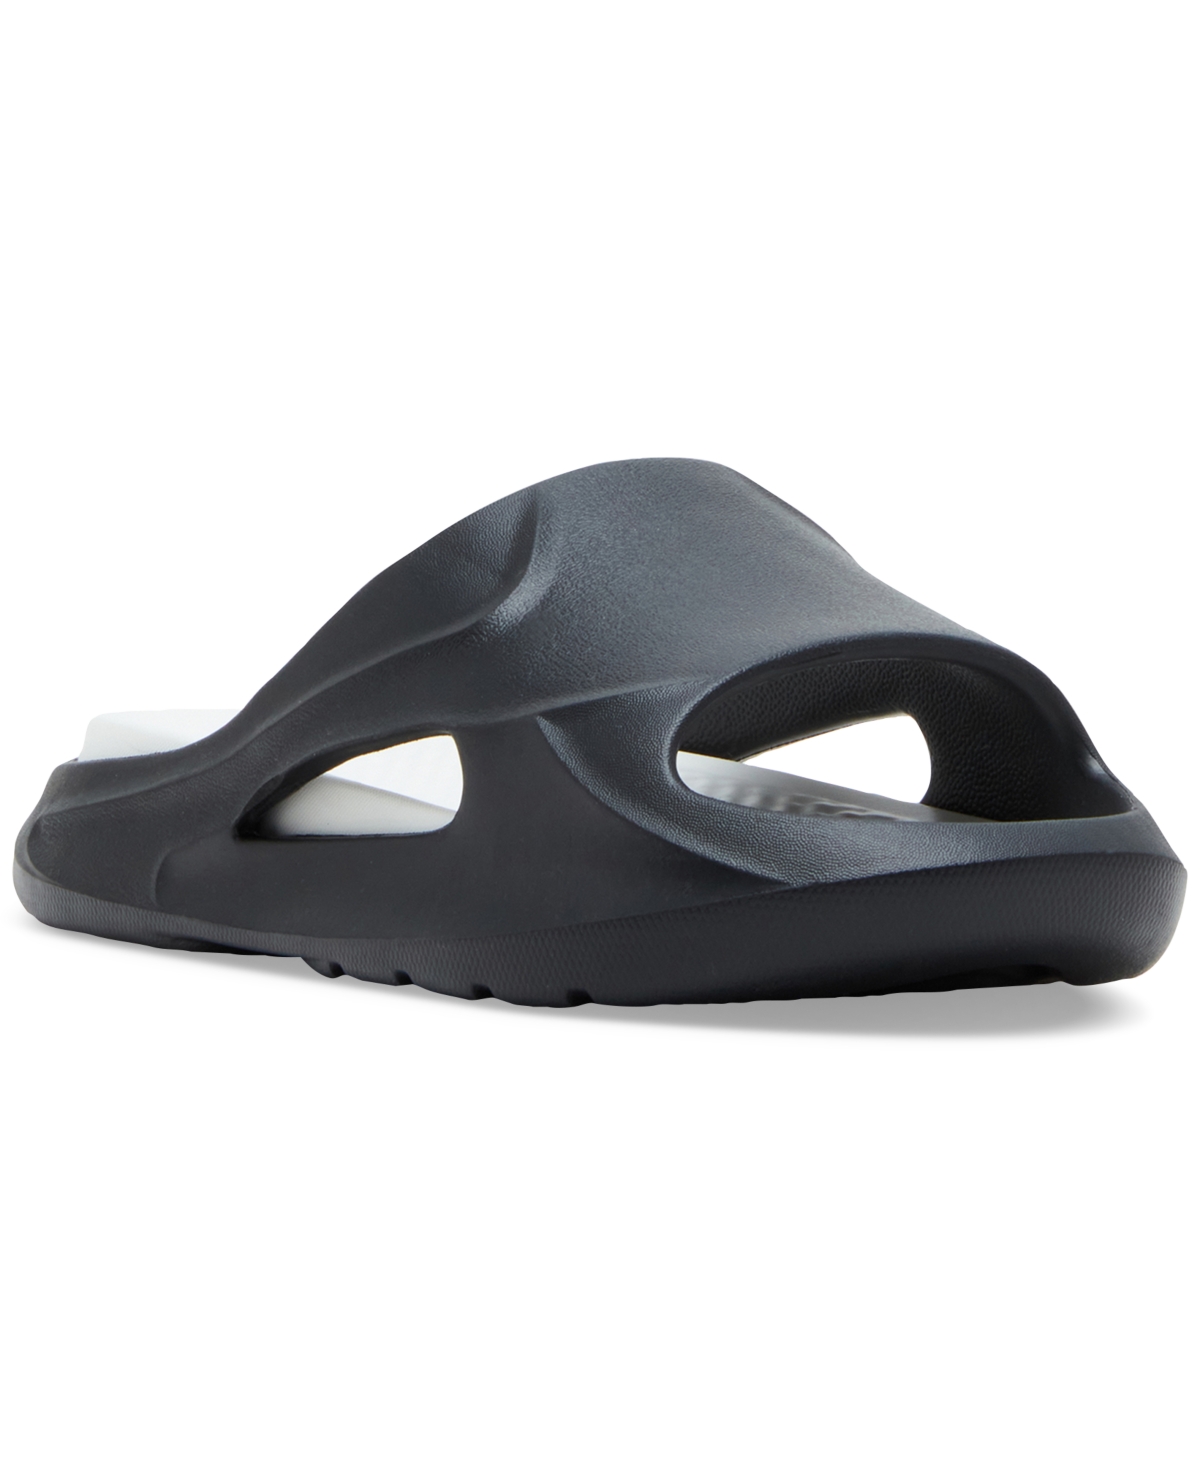 Men's M-Jerrii Sculptured Pool Slide Sandals - Taupe Rubber